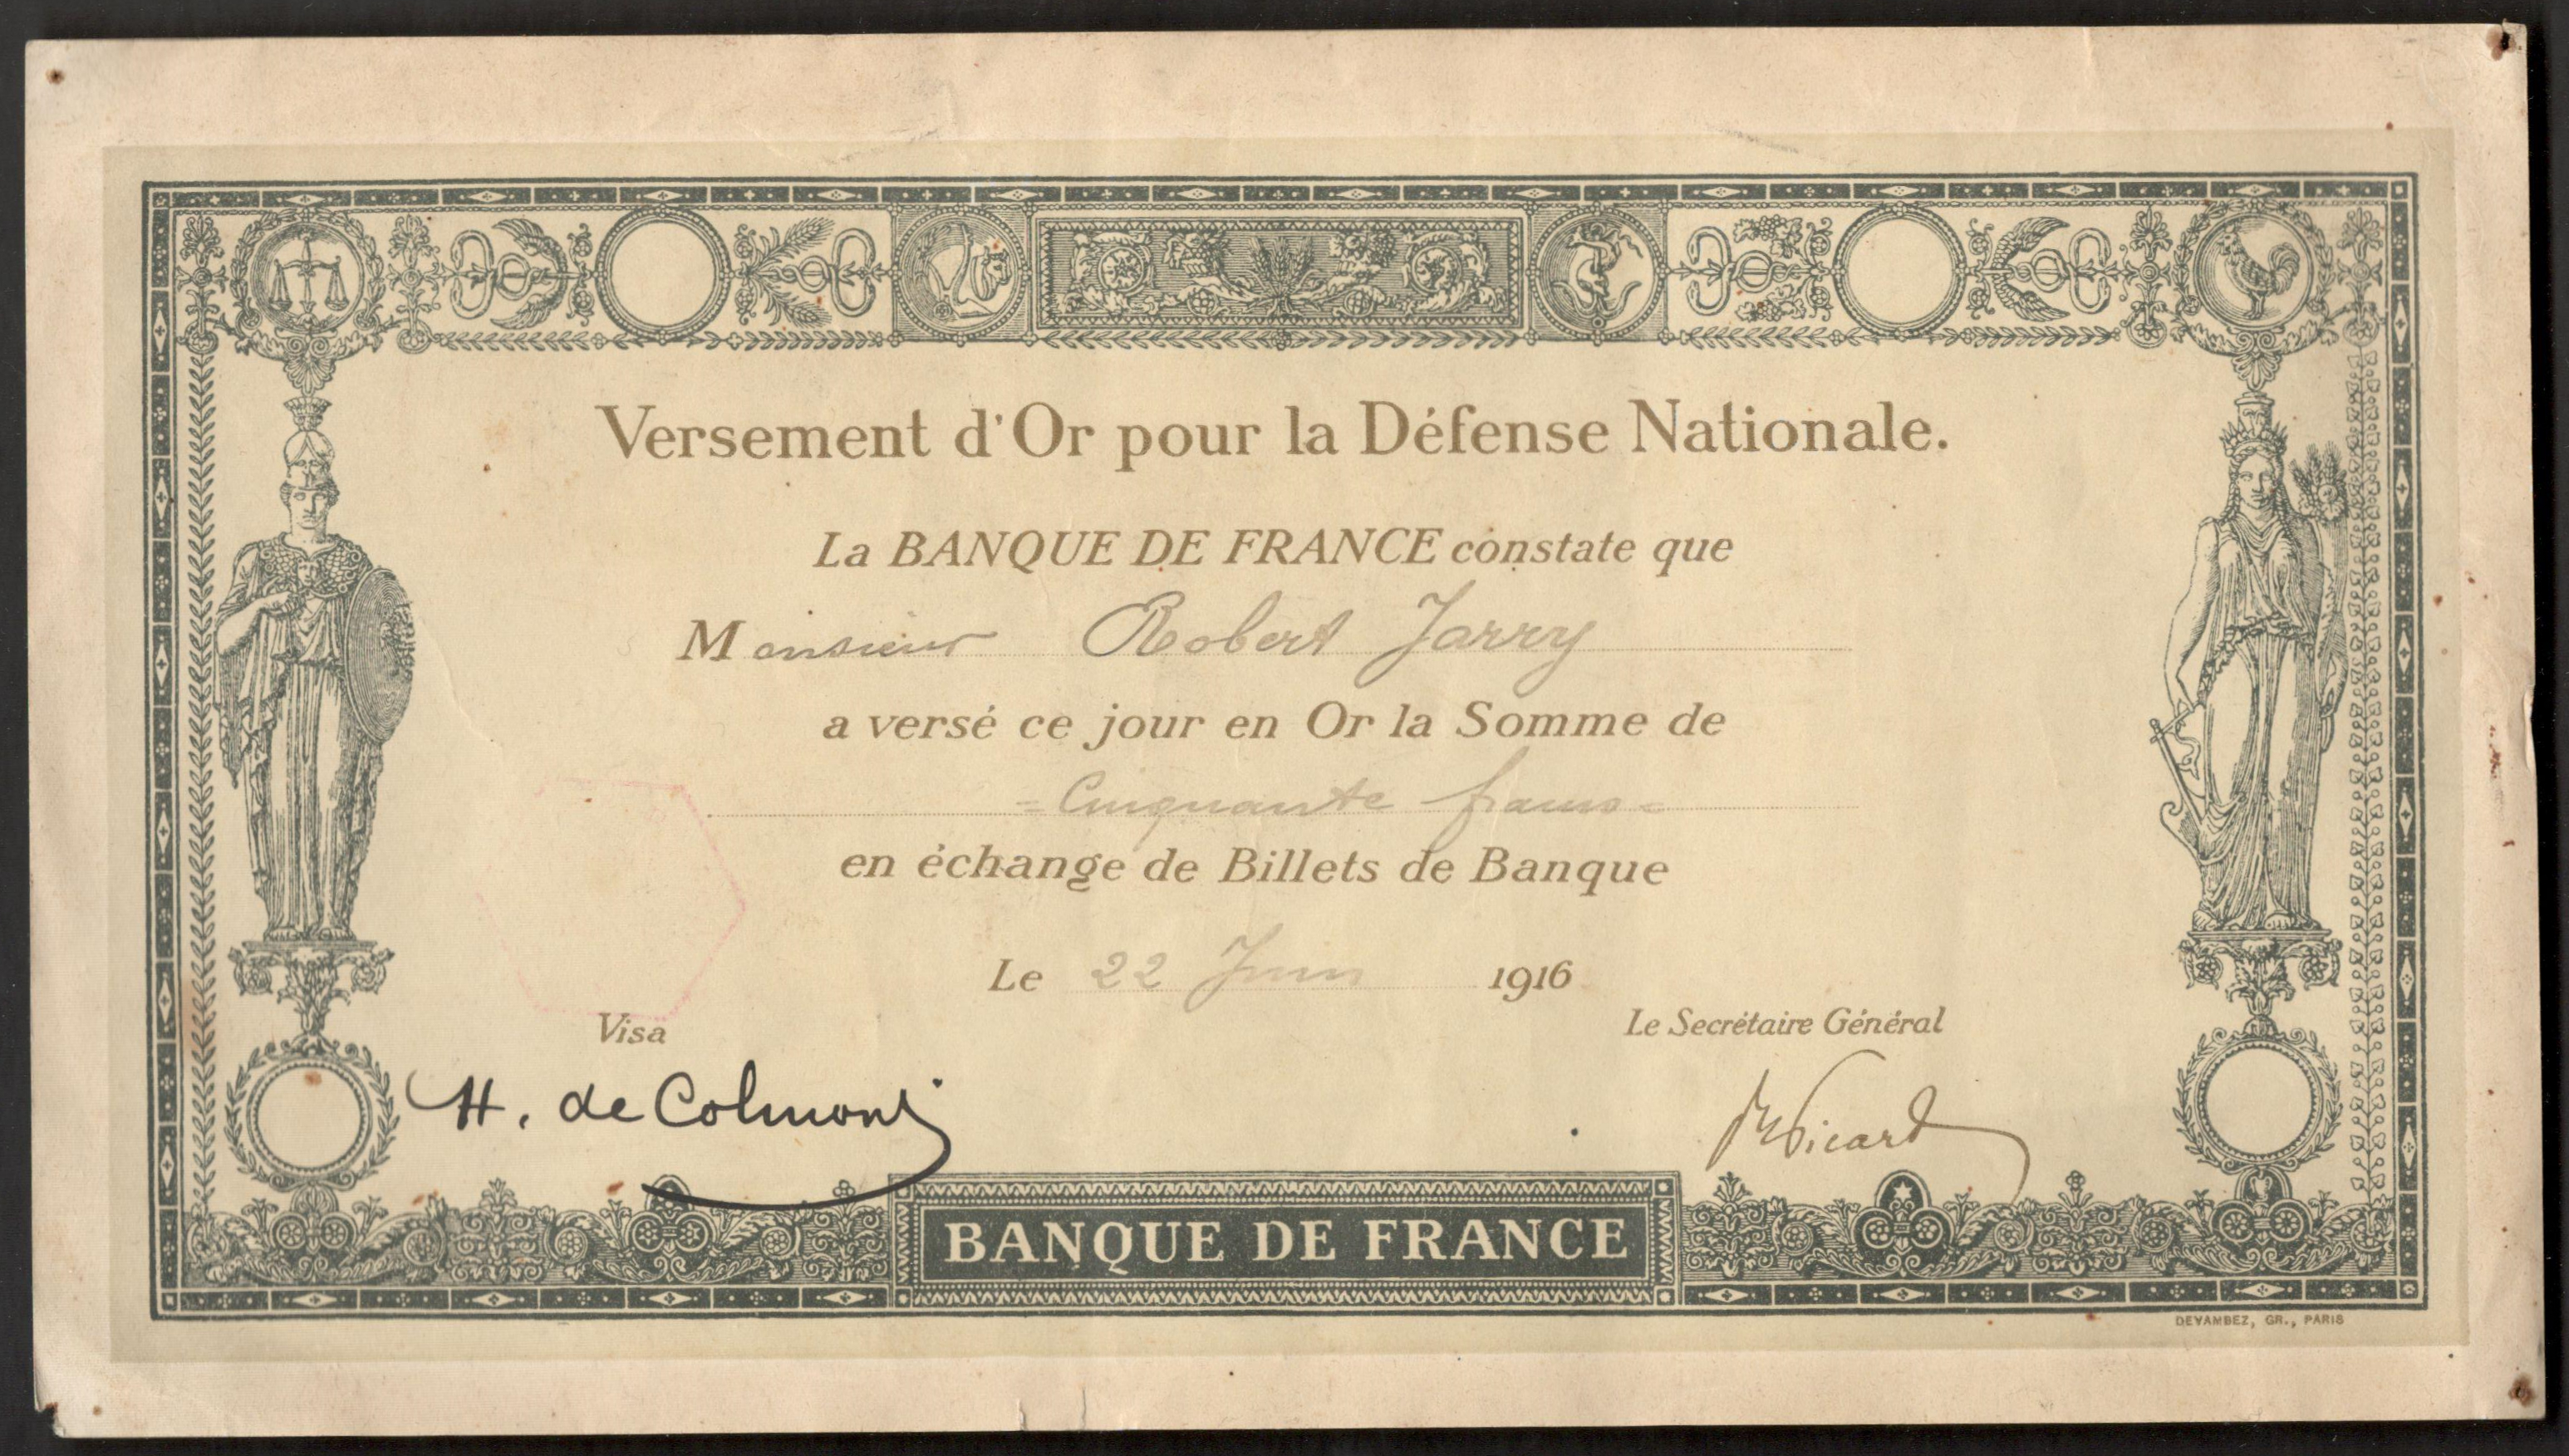 1916 BANQUE DE FRANCE VERSEMENT D'OR POUR LA DEFENSE NATIONALE